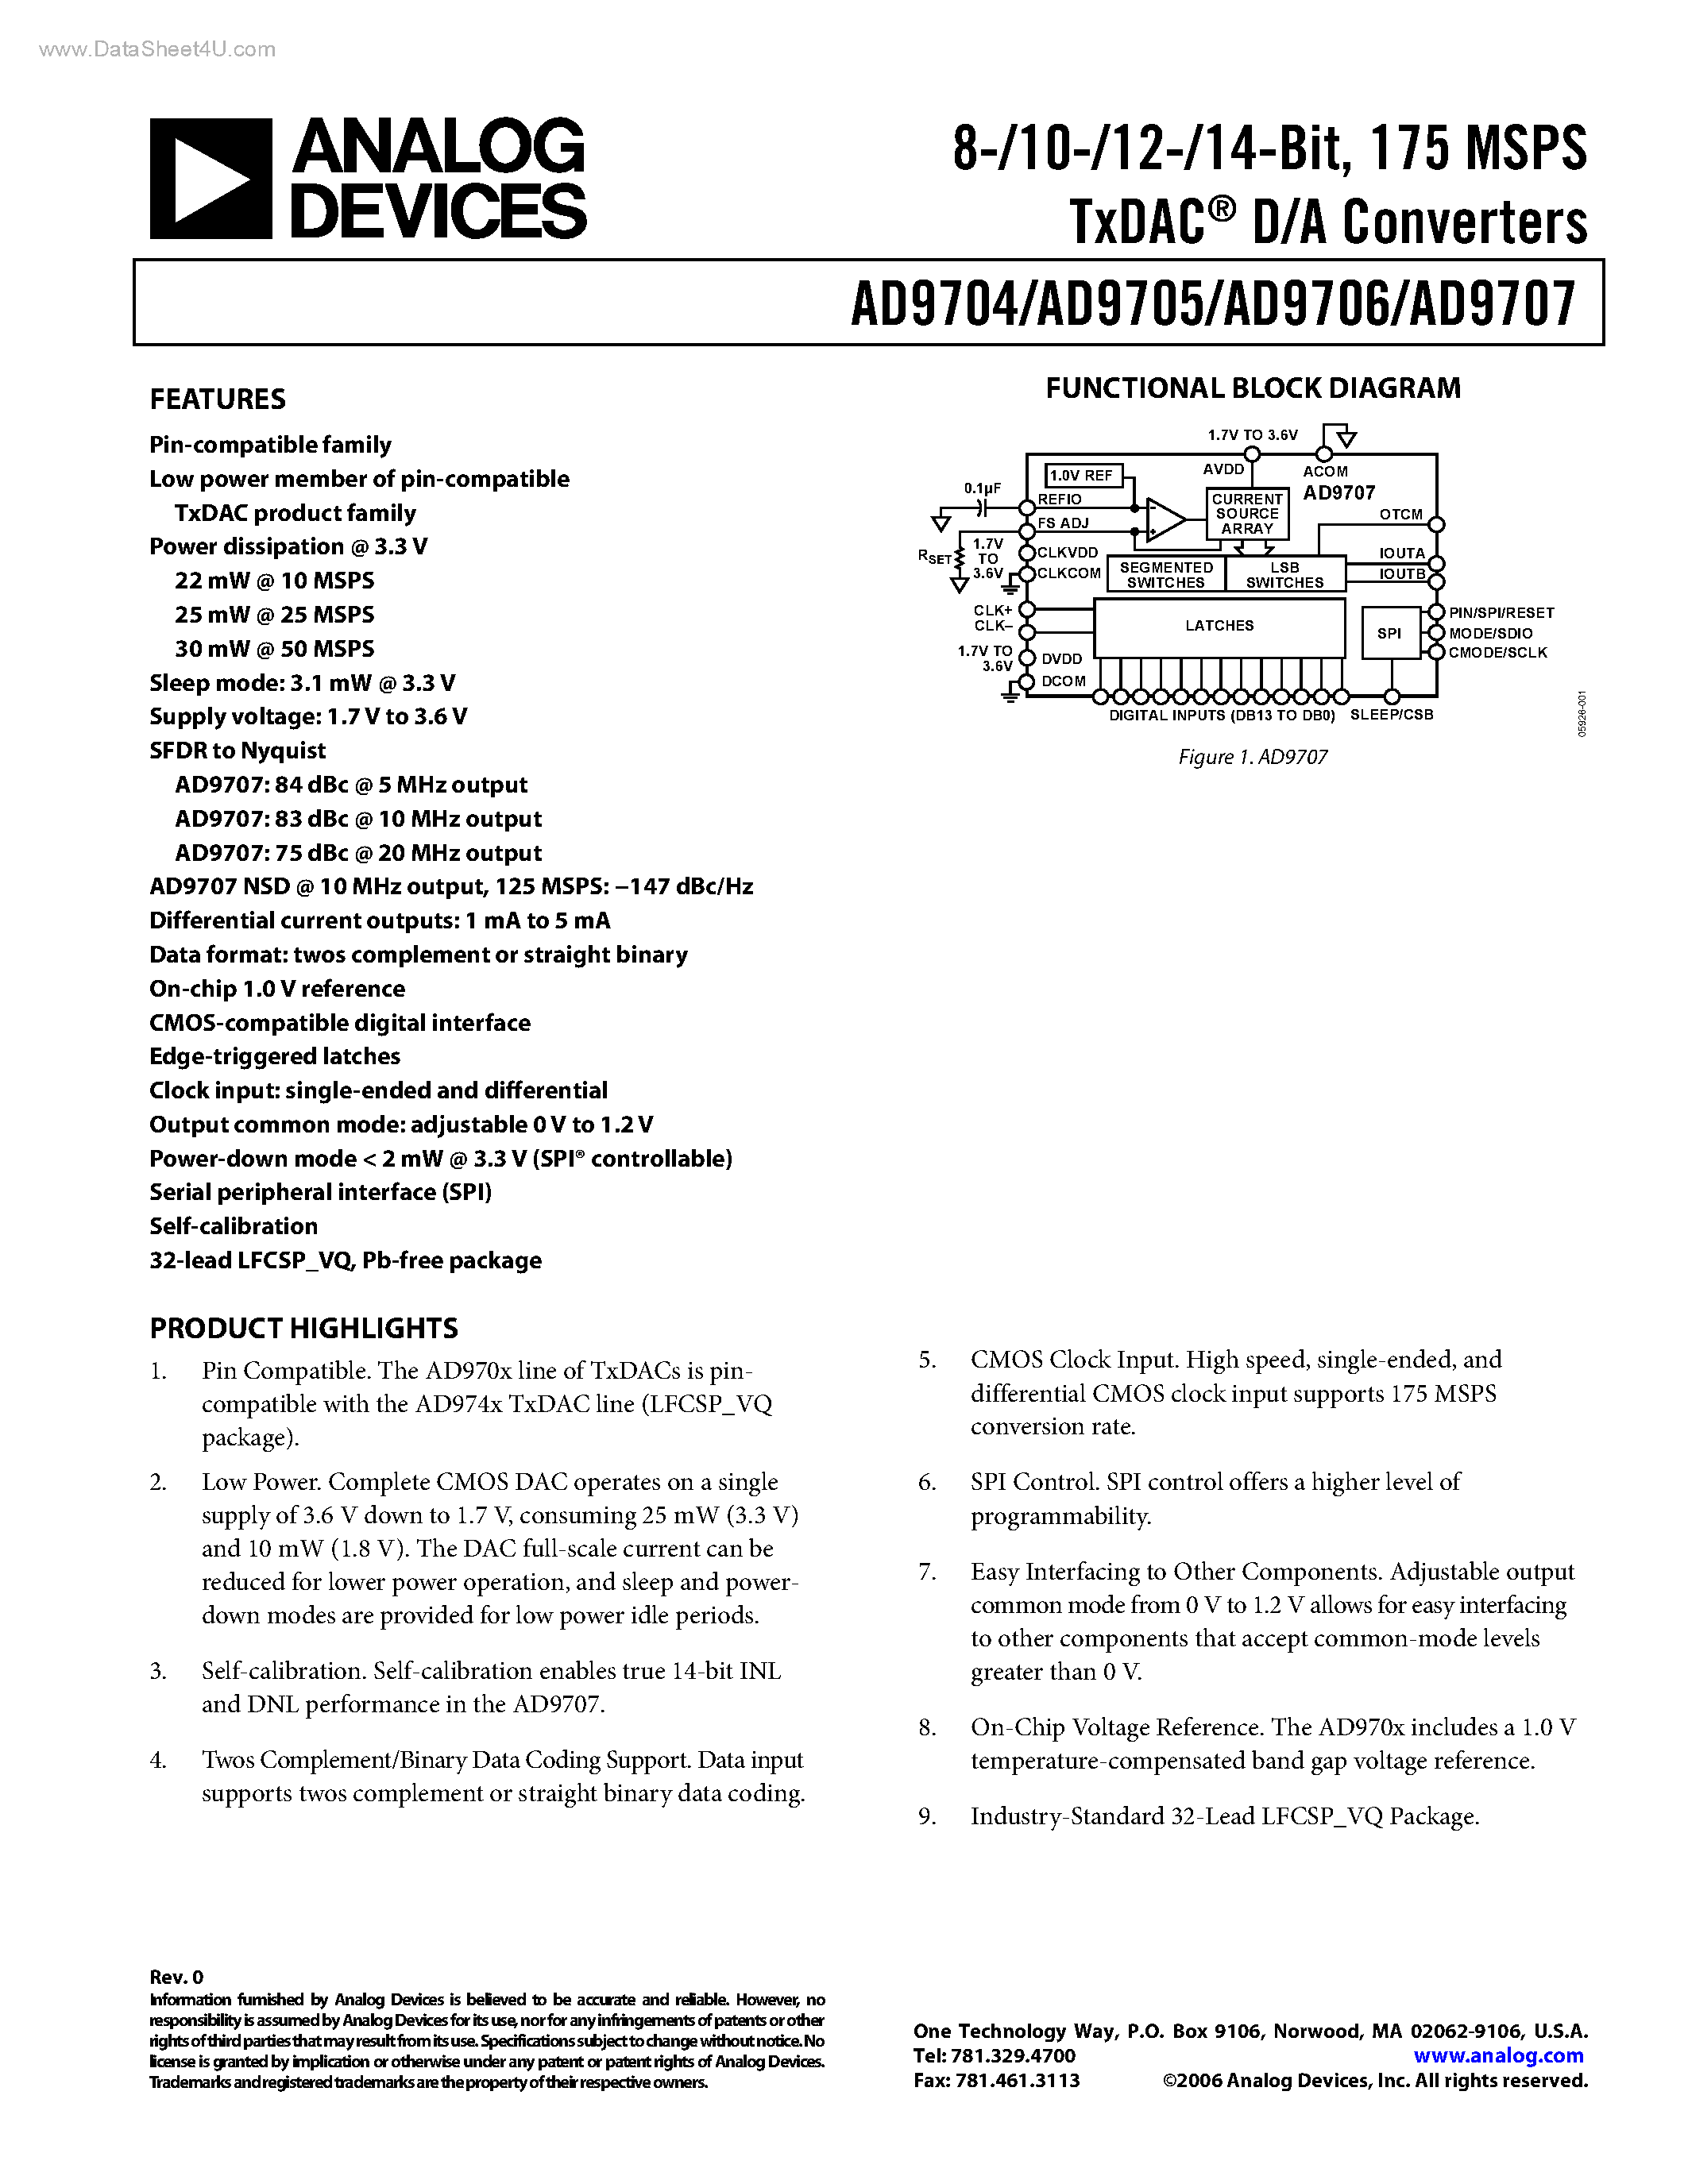 Даташит AD9705-(AD9704 - AD9707) TxDAC D/A Converters страница 1